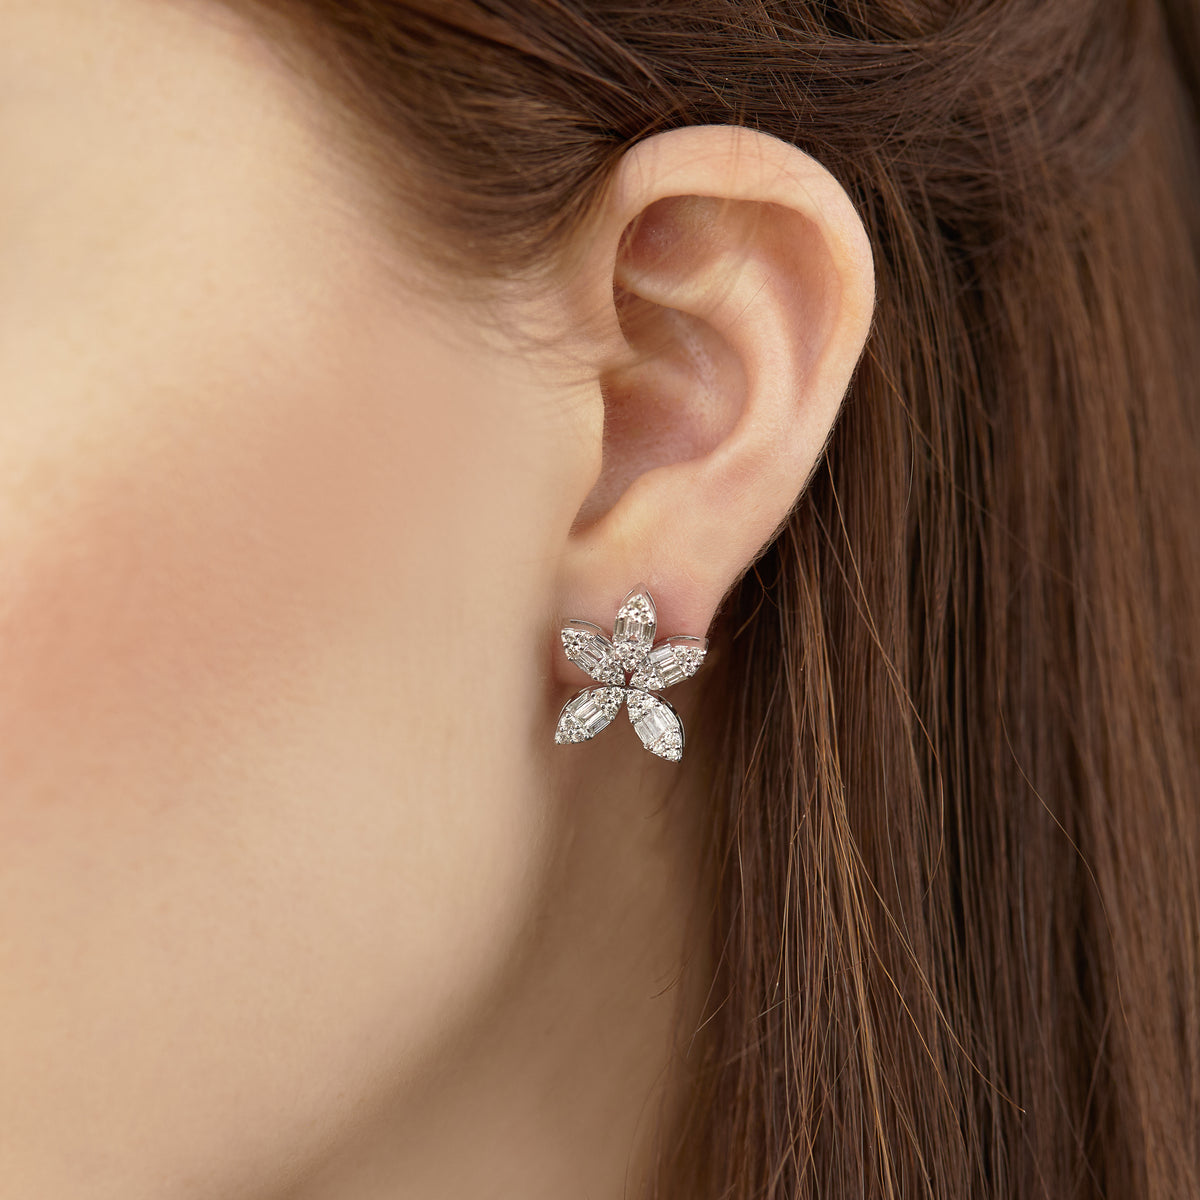 Starburst Diamond Stud Earrings